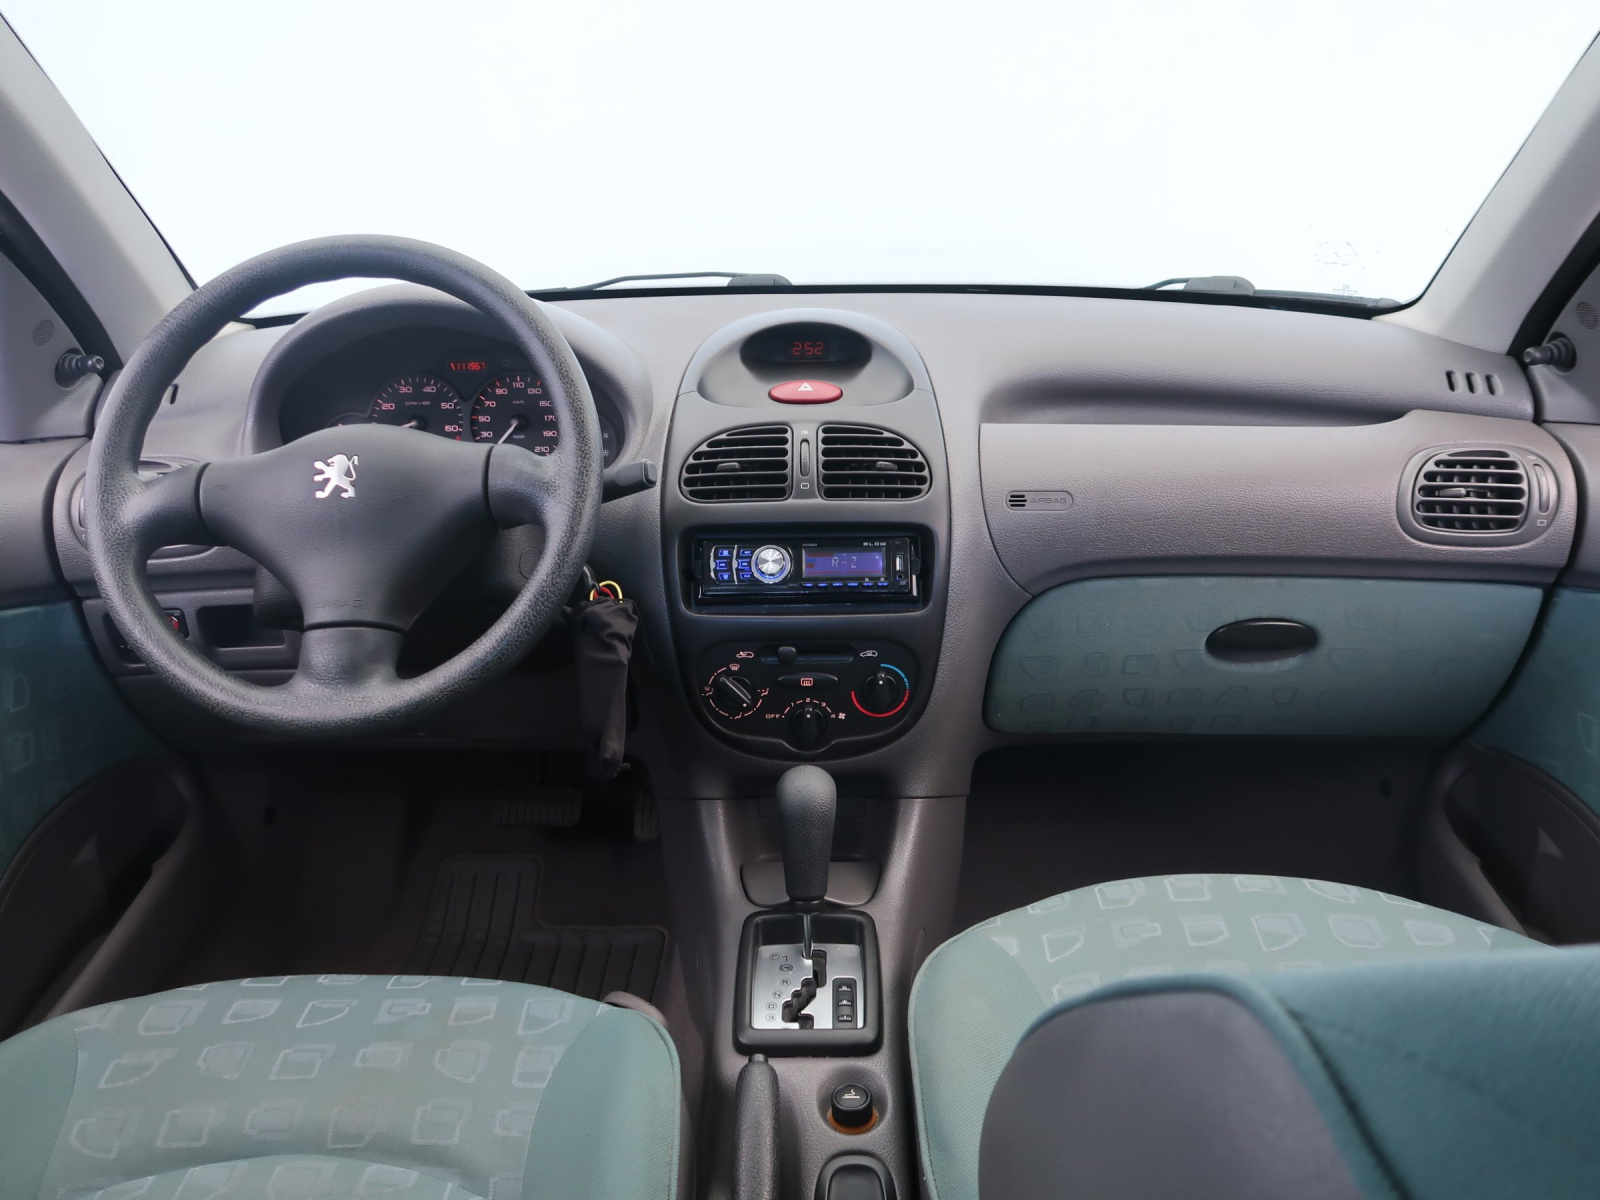 Peugeot 206, 2001, 1.4 i, 55kW